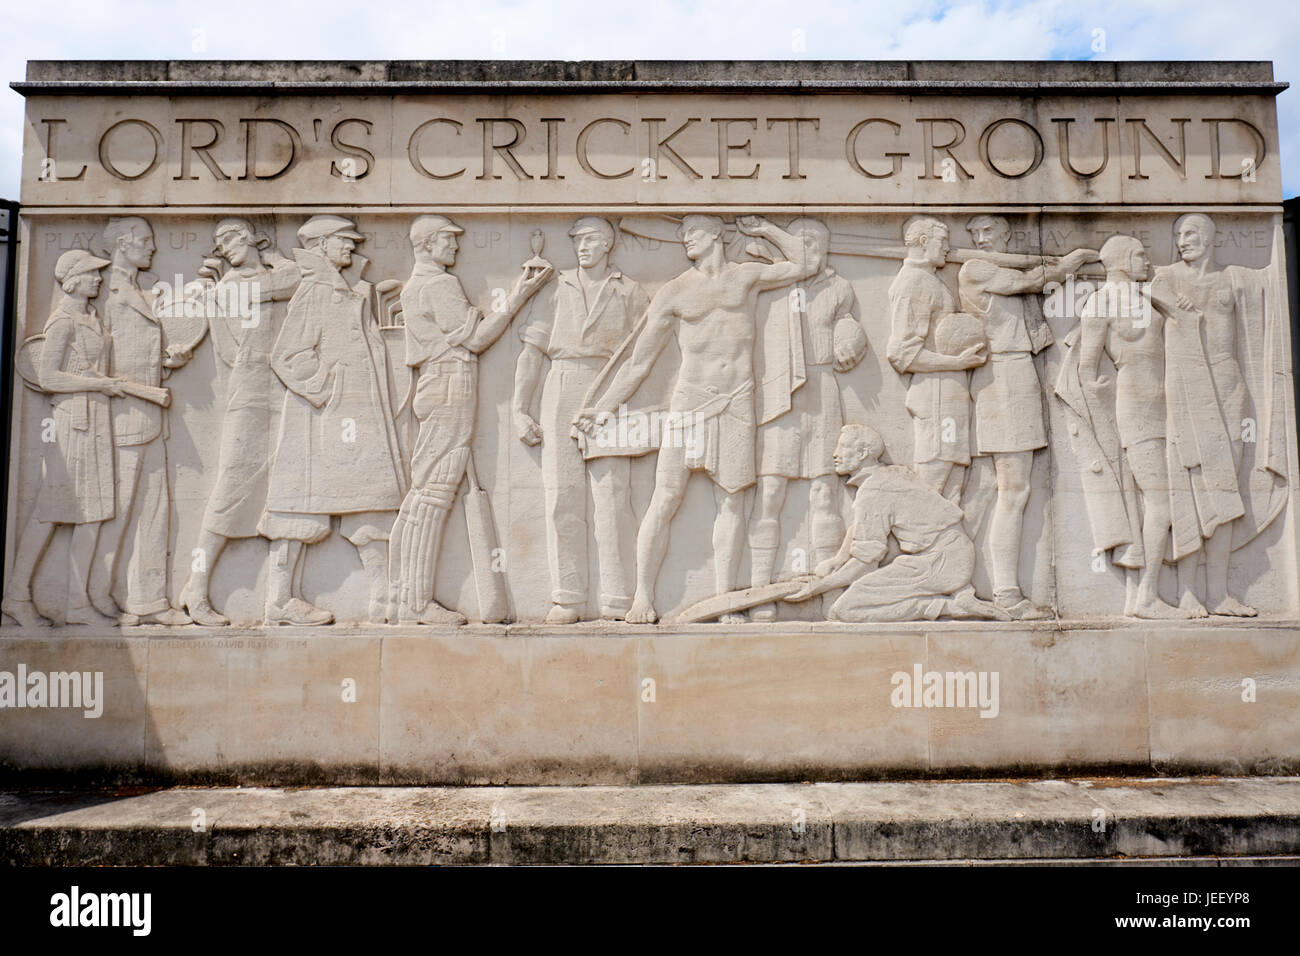 Frise sculpturale en dehors de Lords Cricket Ground montrant des joueurs de cricket avec les cendres, par Gilbert Bayes, St Johns Wood Road, Londres, UK Banque D'Images